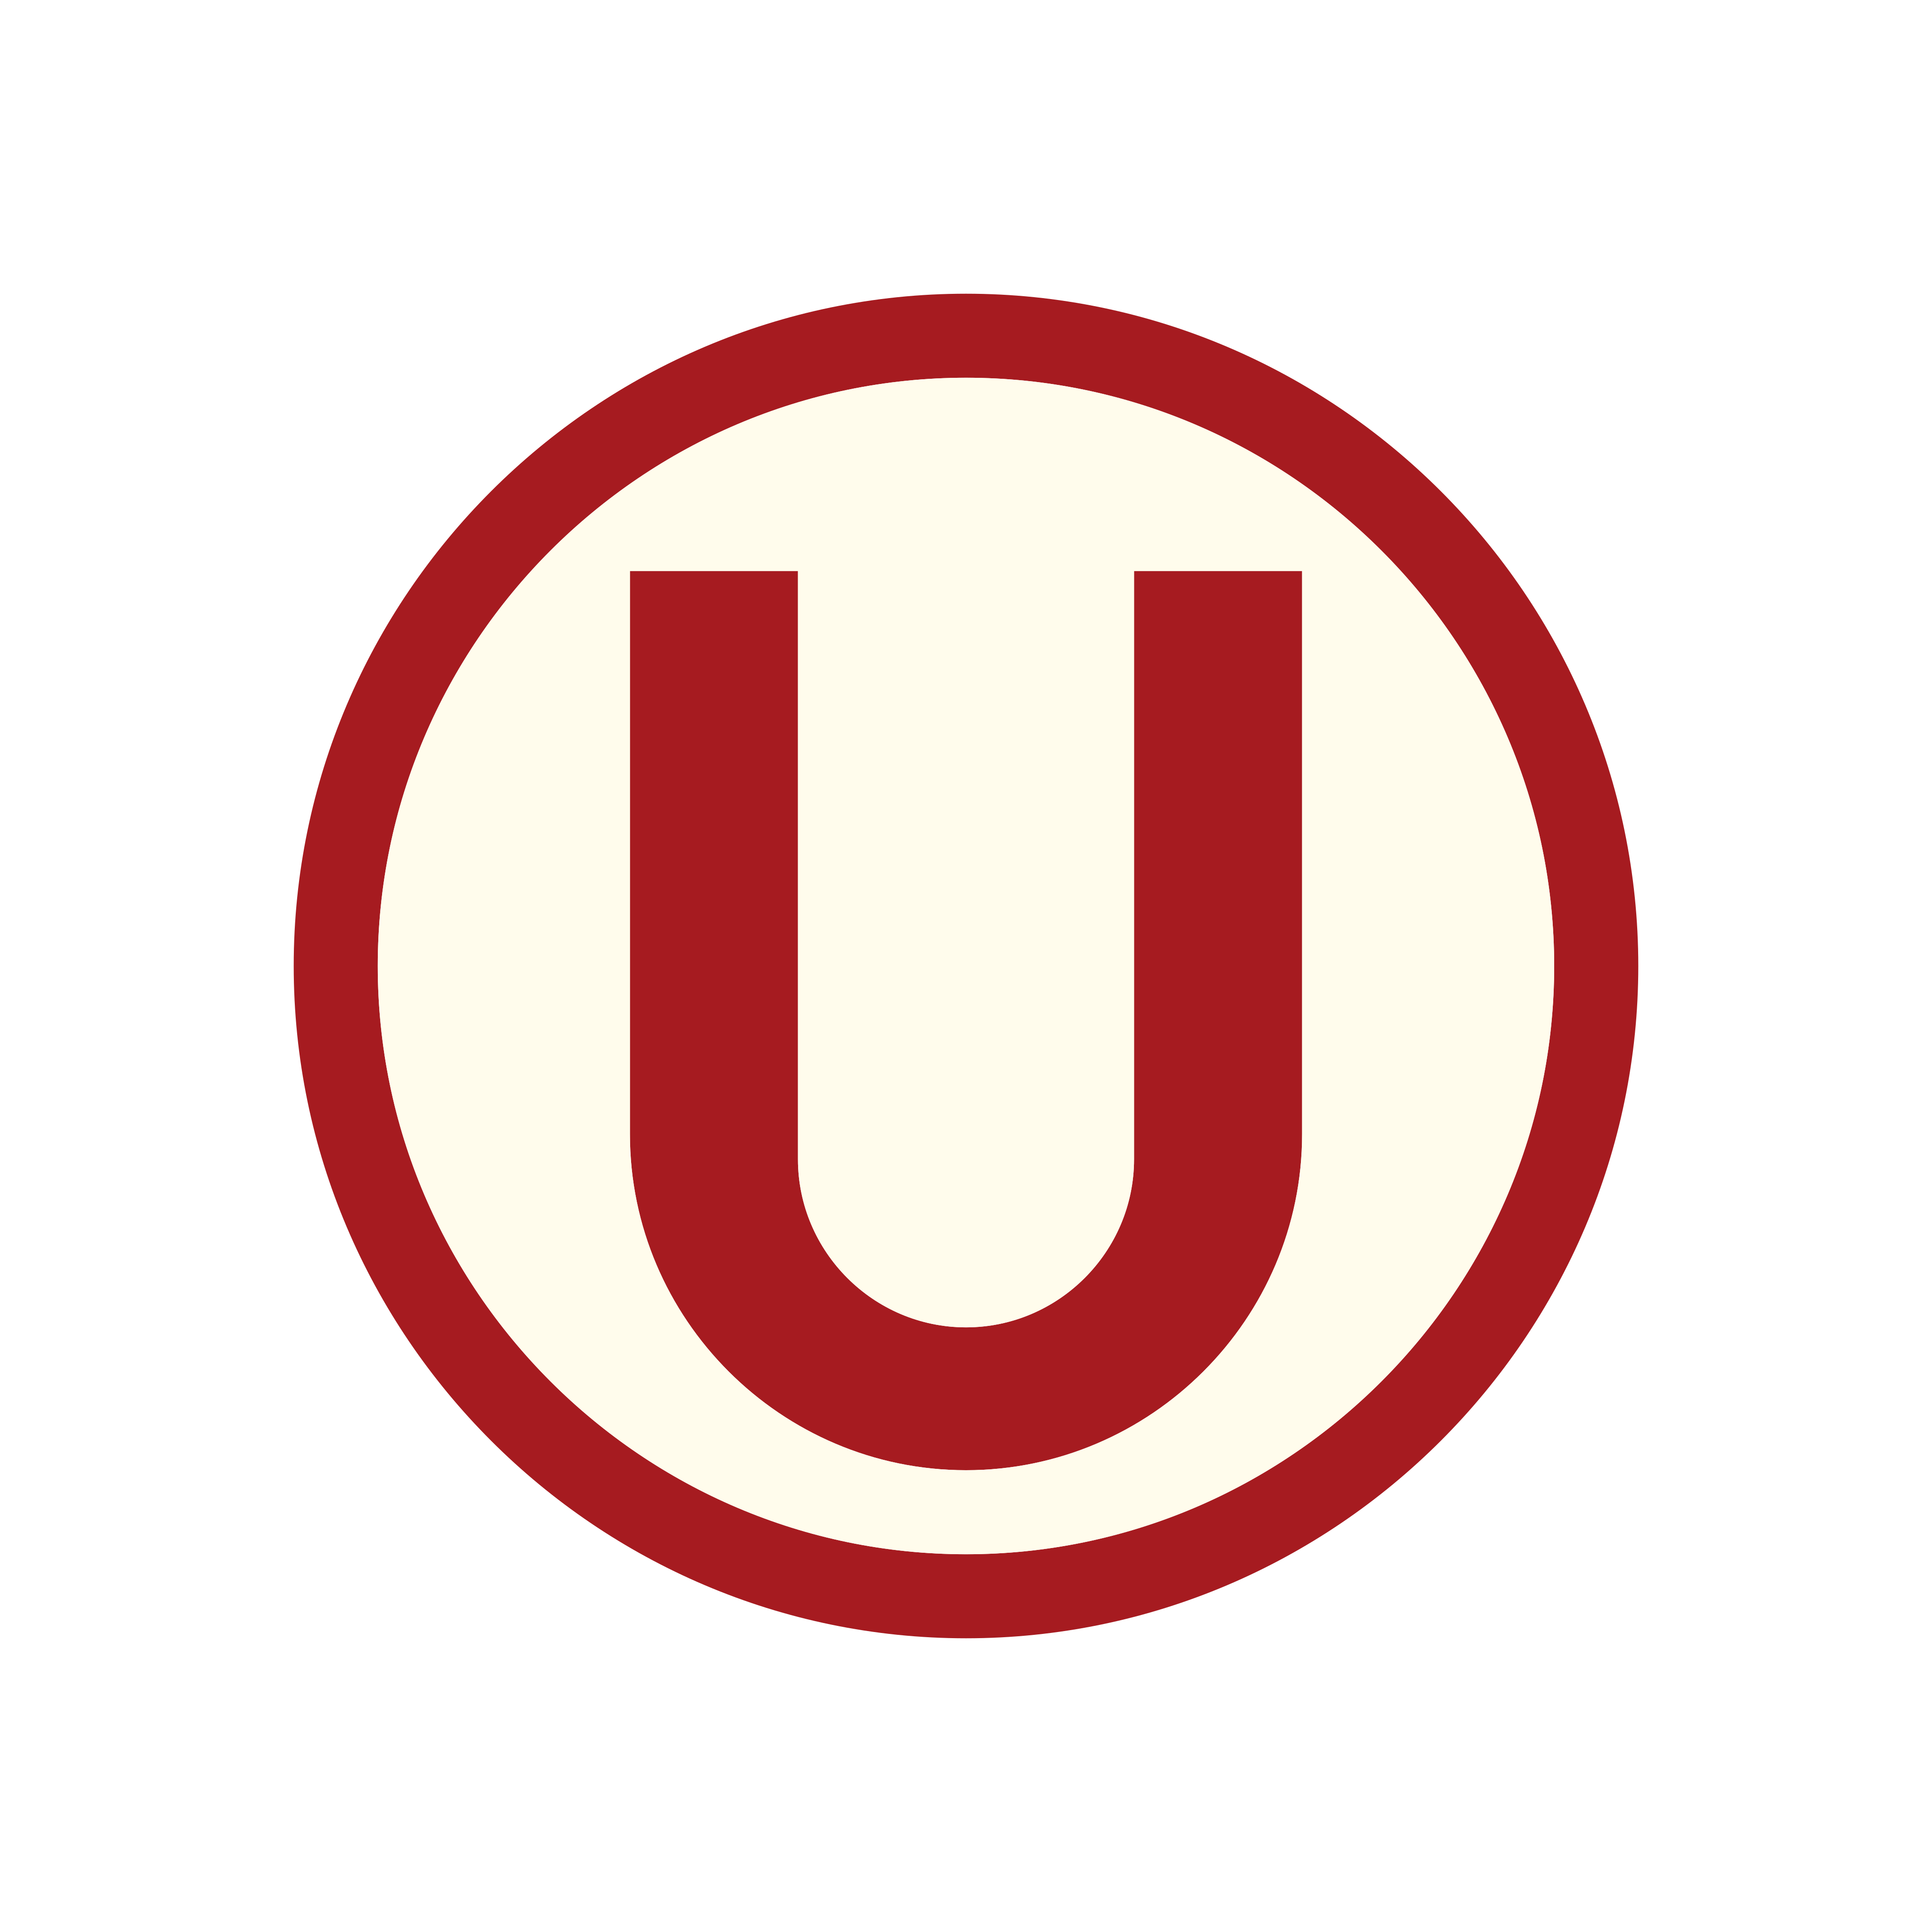 universitario fc logo escudo 0 - Universitario Logo - Escudo